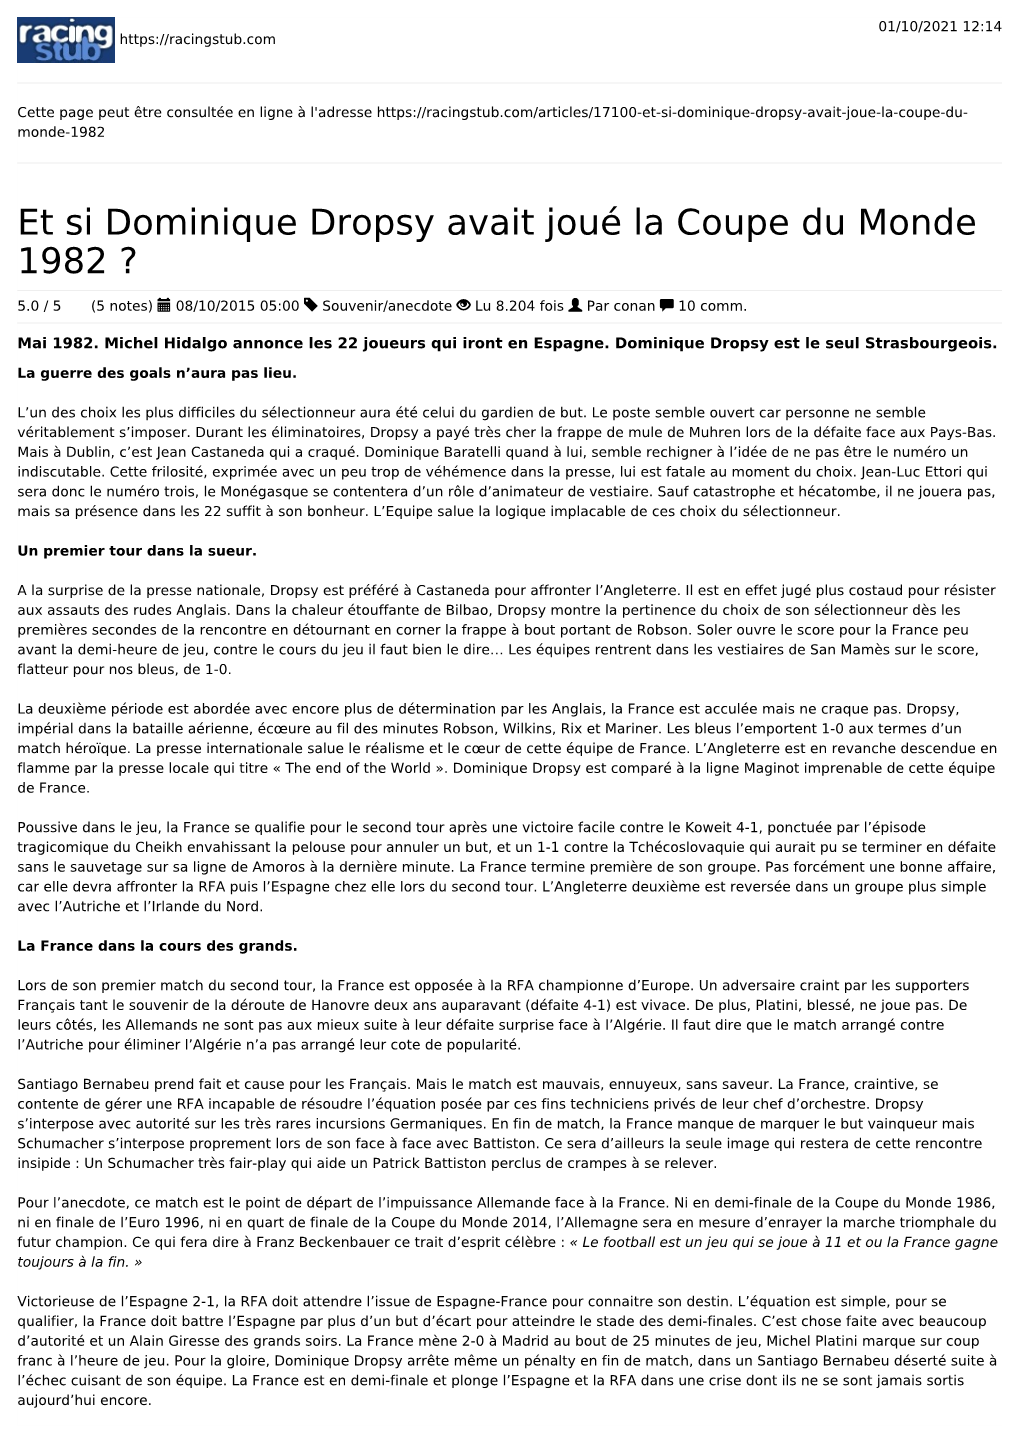 Et Si Dominique Dropsy Avait Joué La Coupe Du Monde 1982 ?